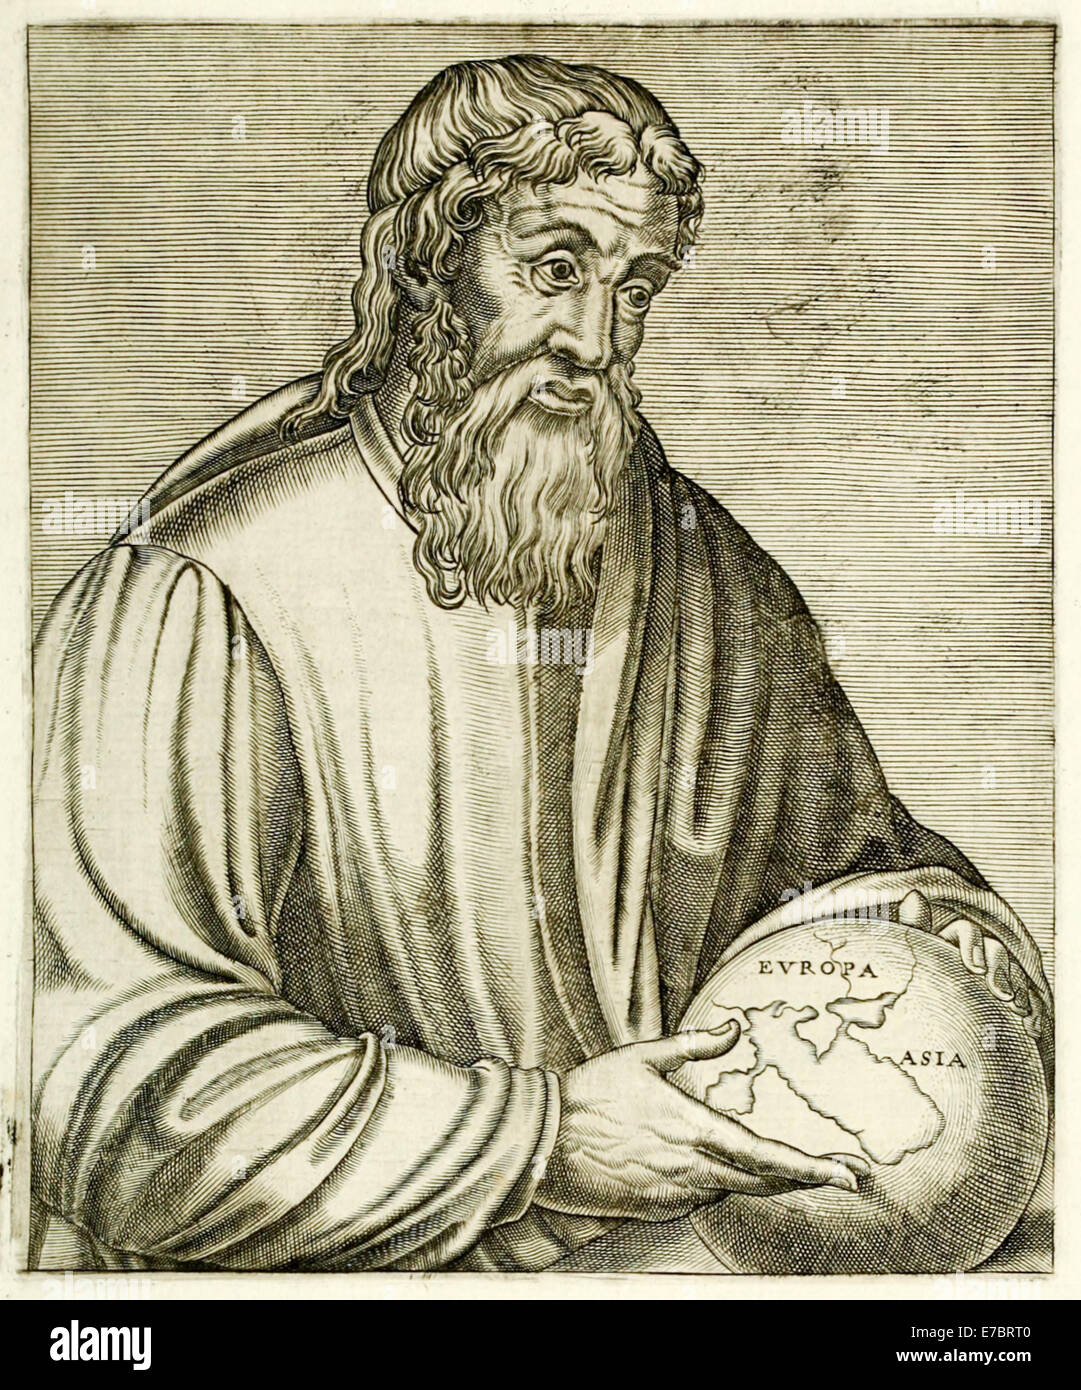 Strabo (64BC – 24AD) griechische Geograph und Historiker, der im gesamten Mittelmeerraum und Vorderasien, viel gereist sein bekannteste Werk ist "Geographica". Kupferstich von Frère André Thévet (1516-1590). Siehe Beschreibung für mehr Informationen. Stockfoto